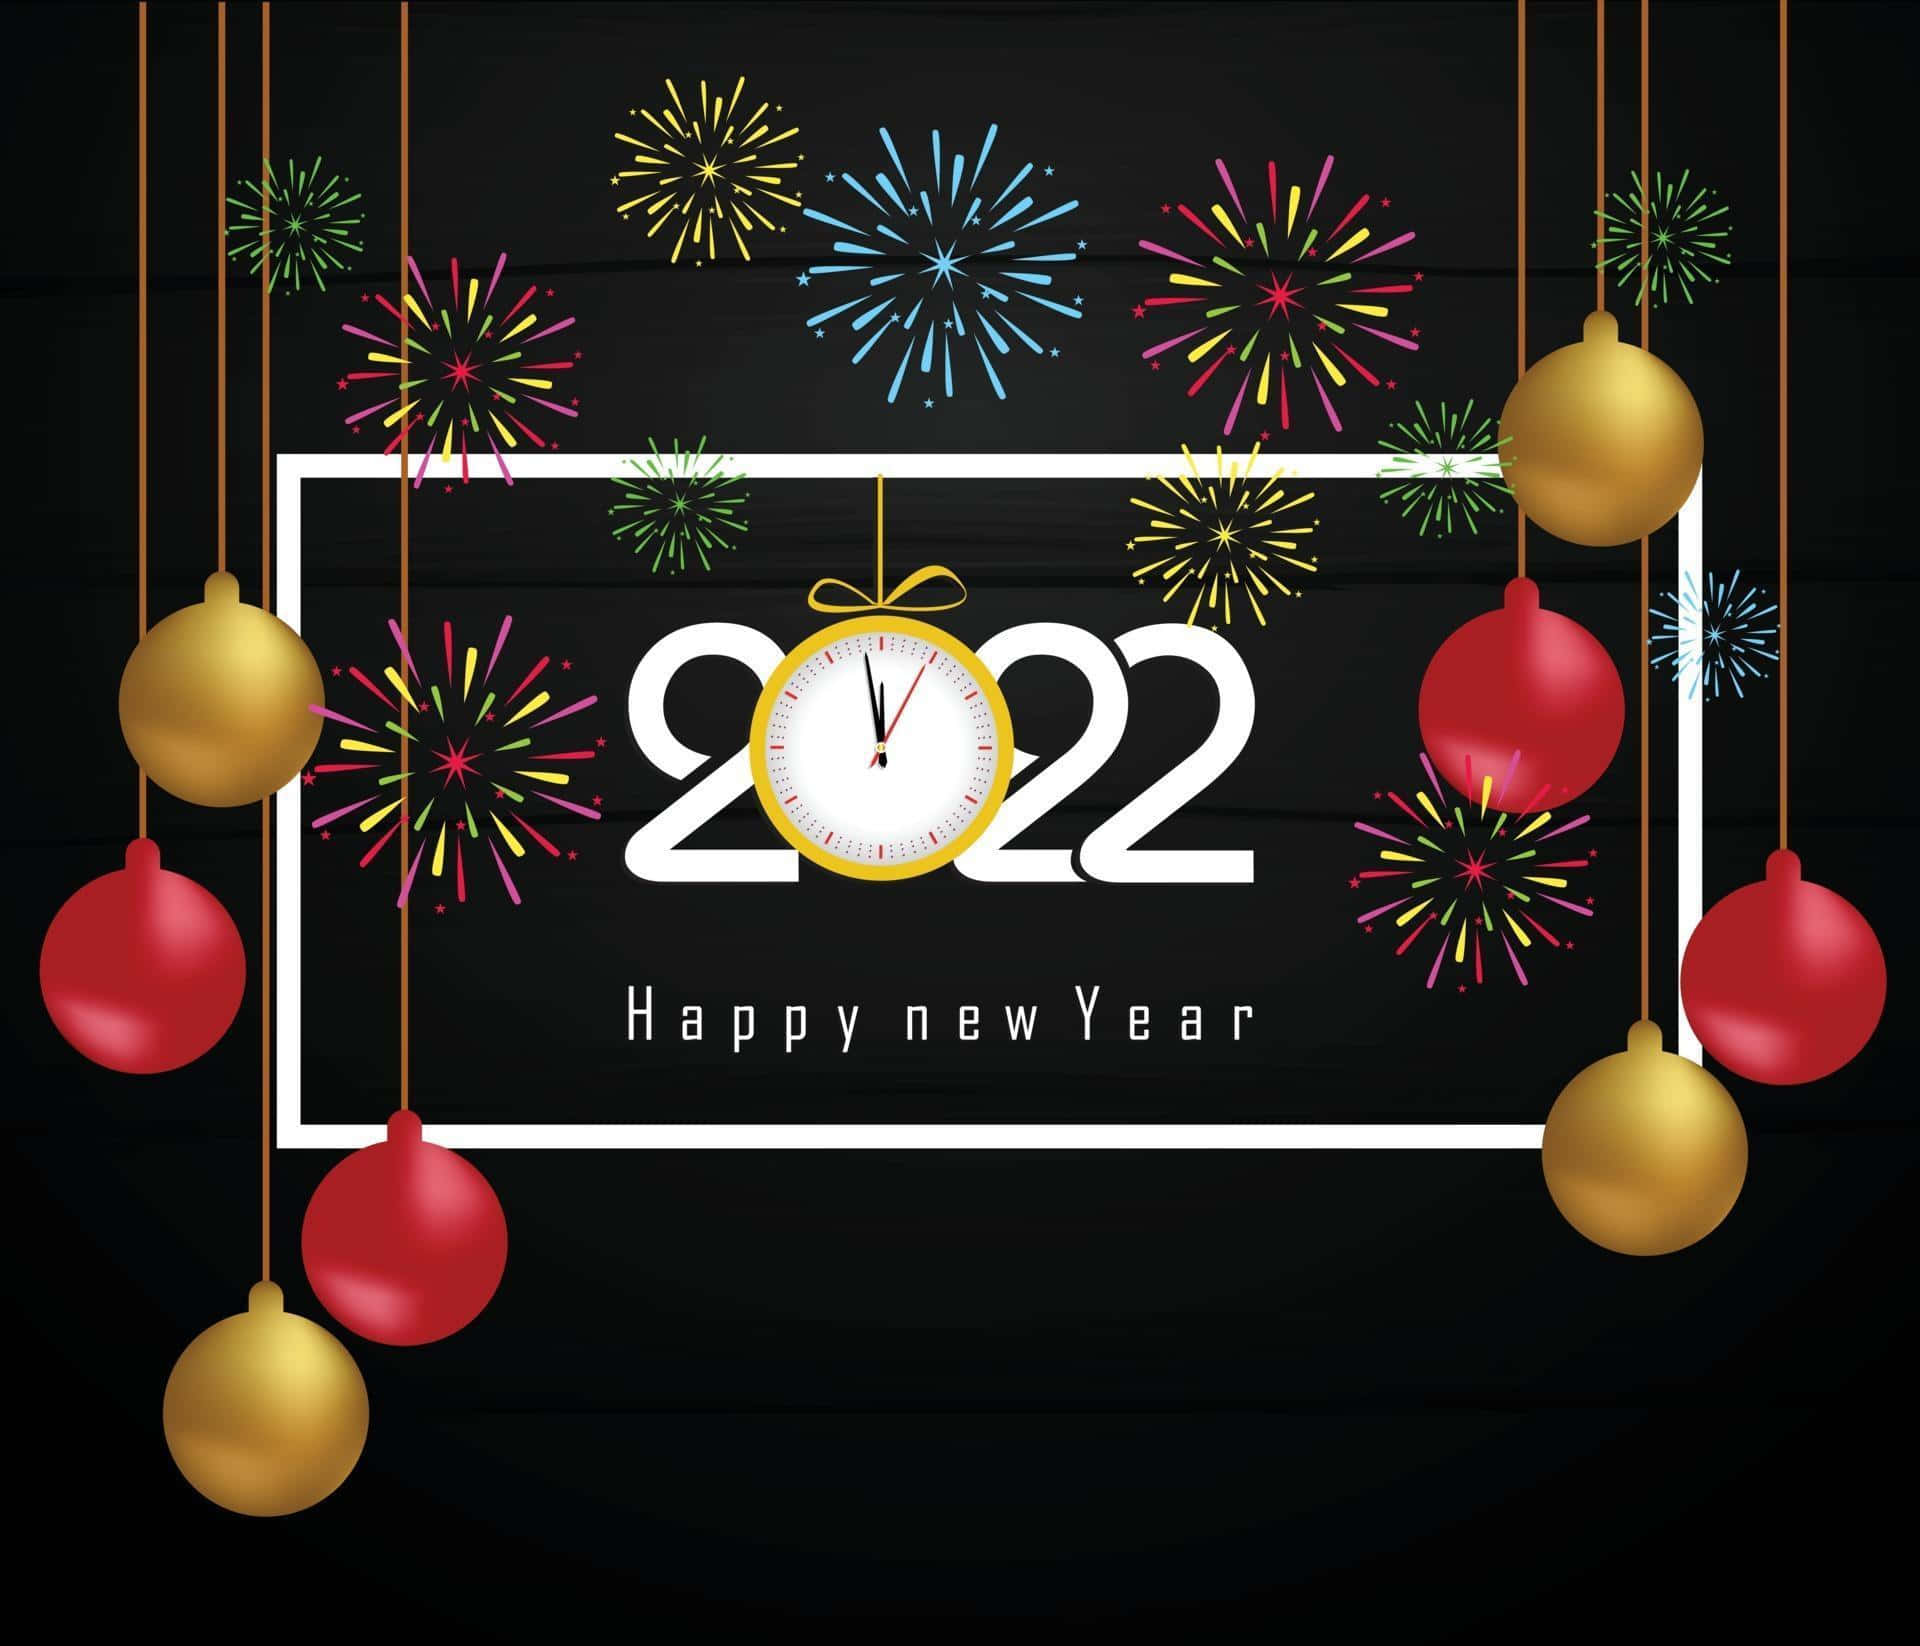 Faiun Desiderio Per Un Felice Anno Nuovo 2022!